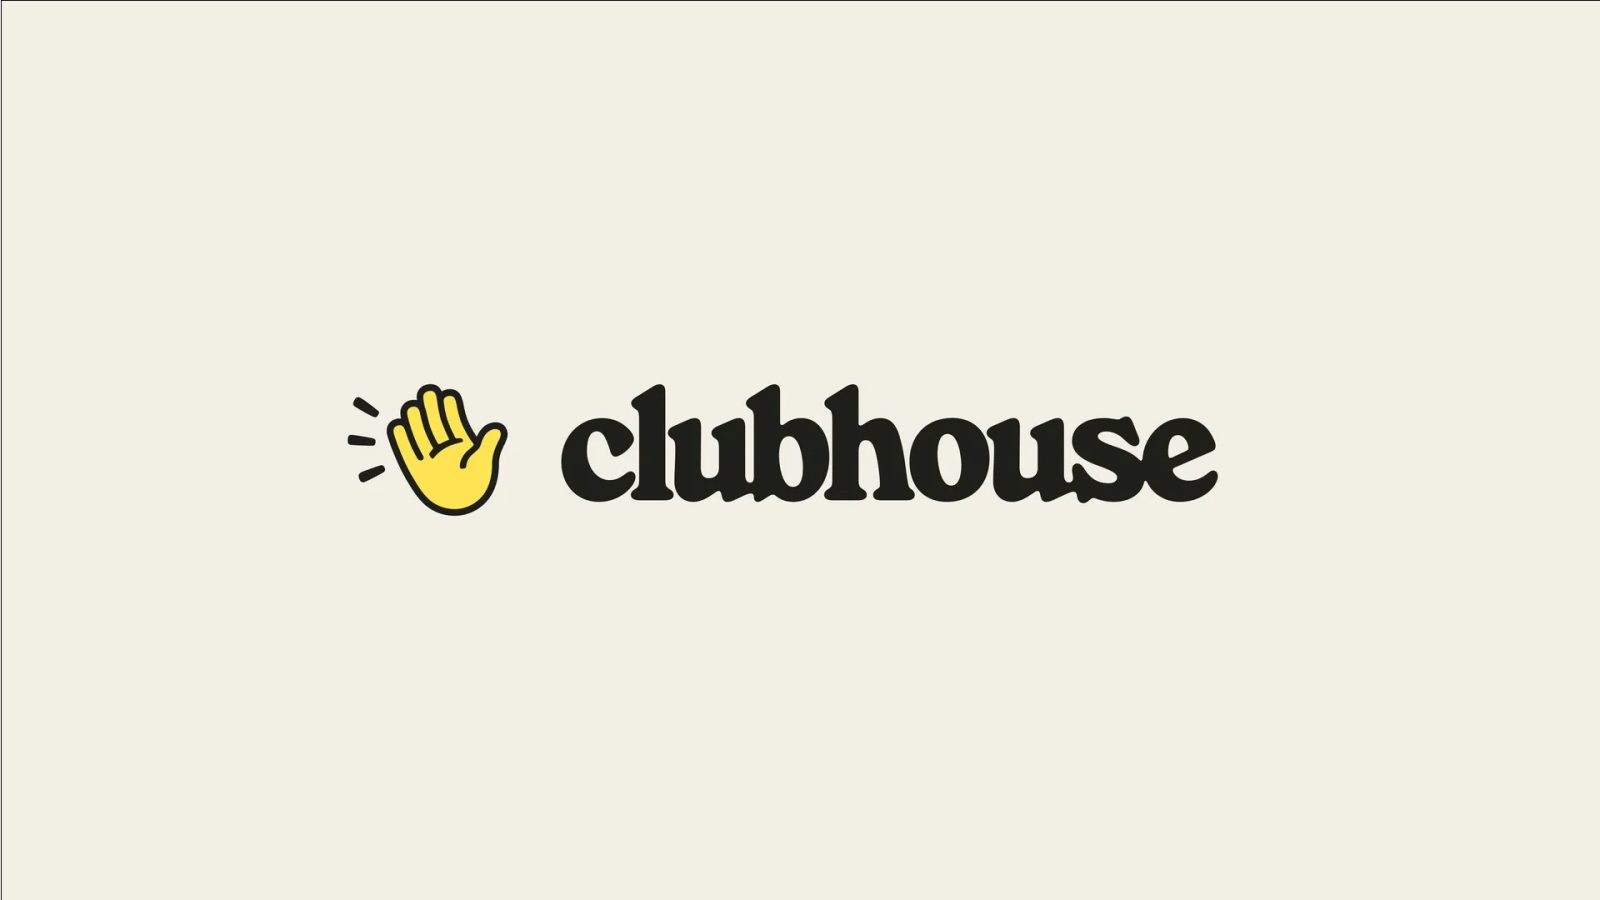 Clubhouse despide a la mitad de sus empleados mientras la plataforma lucha por mantenerse relevante